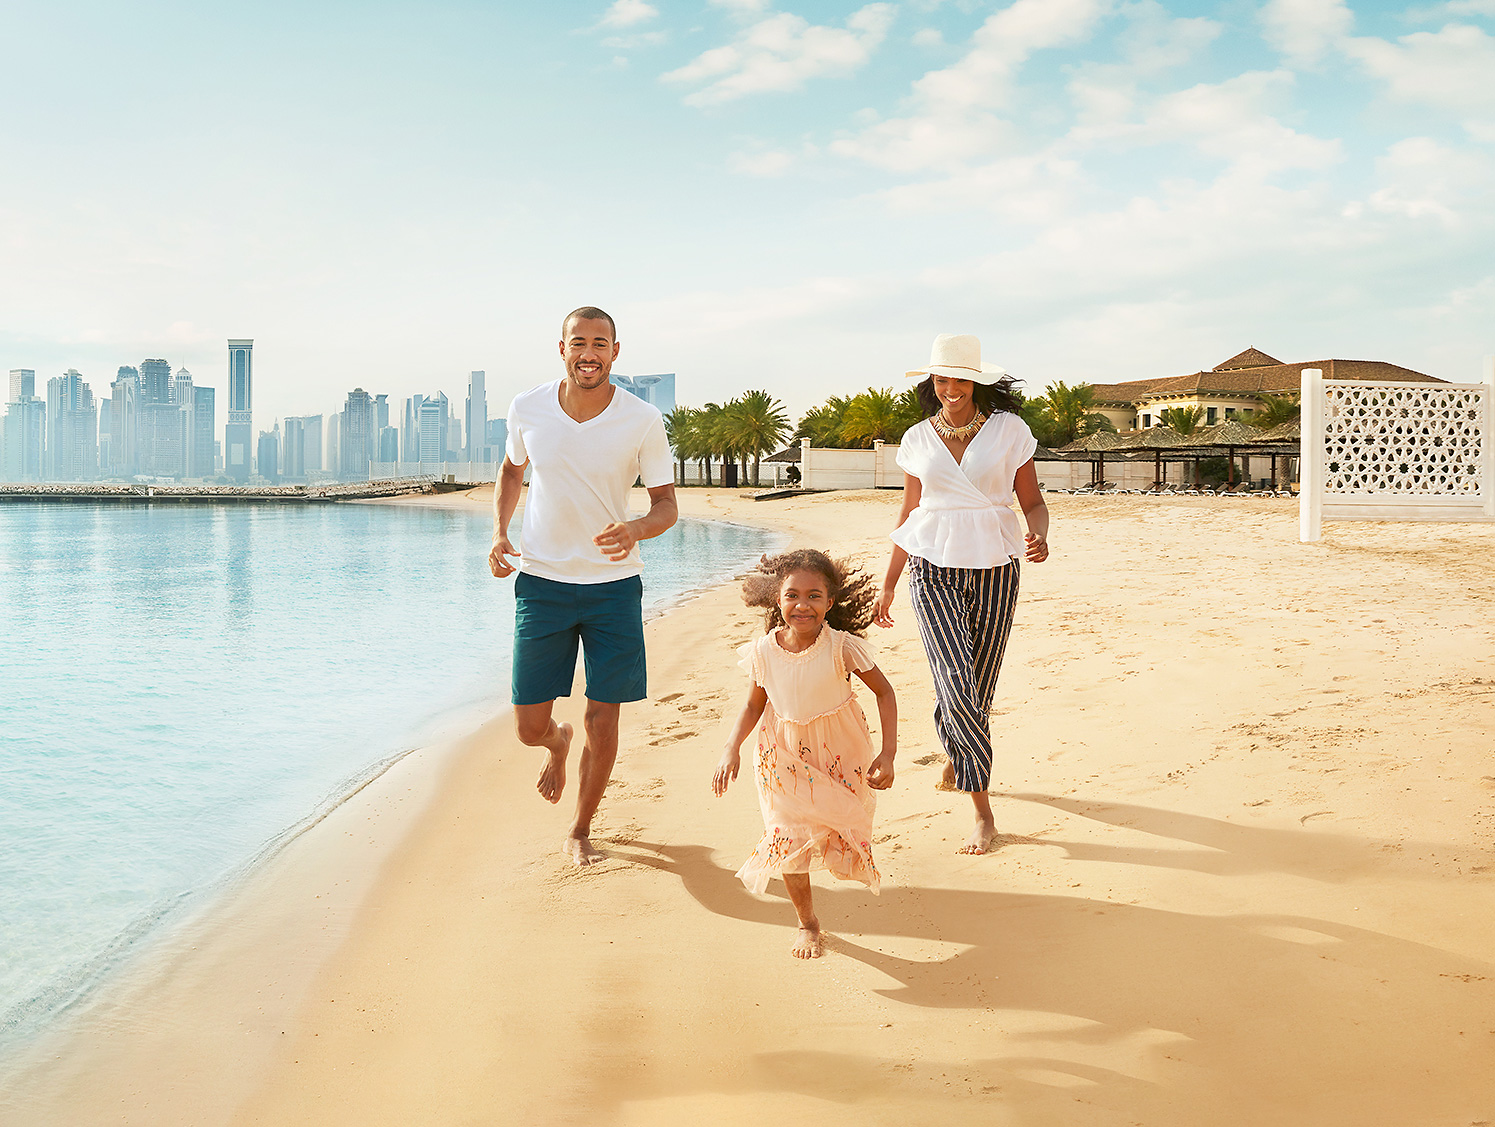 The top public beaches in Qatar